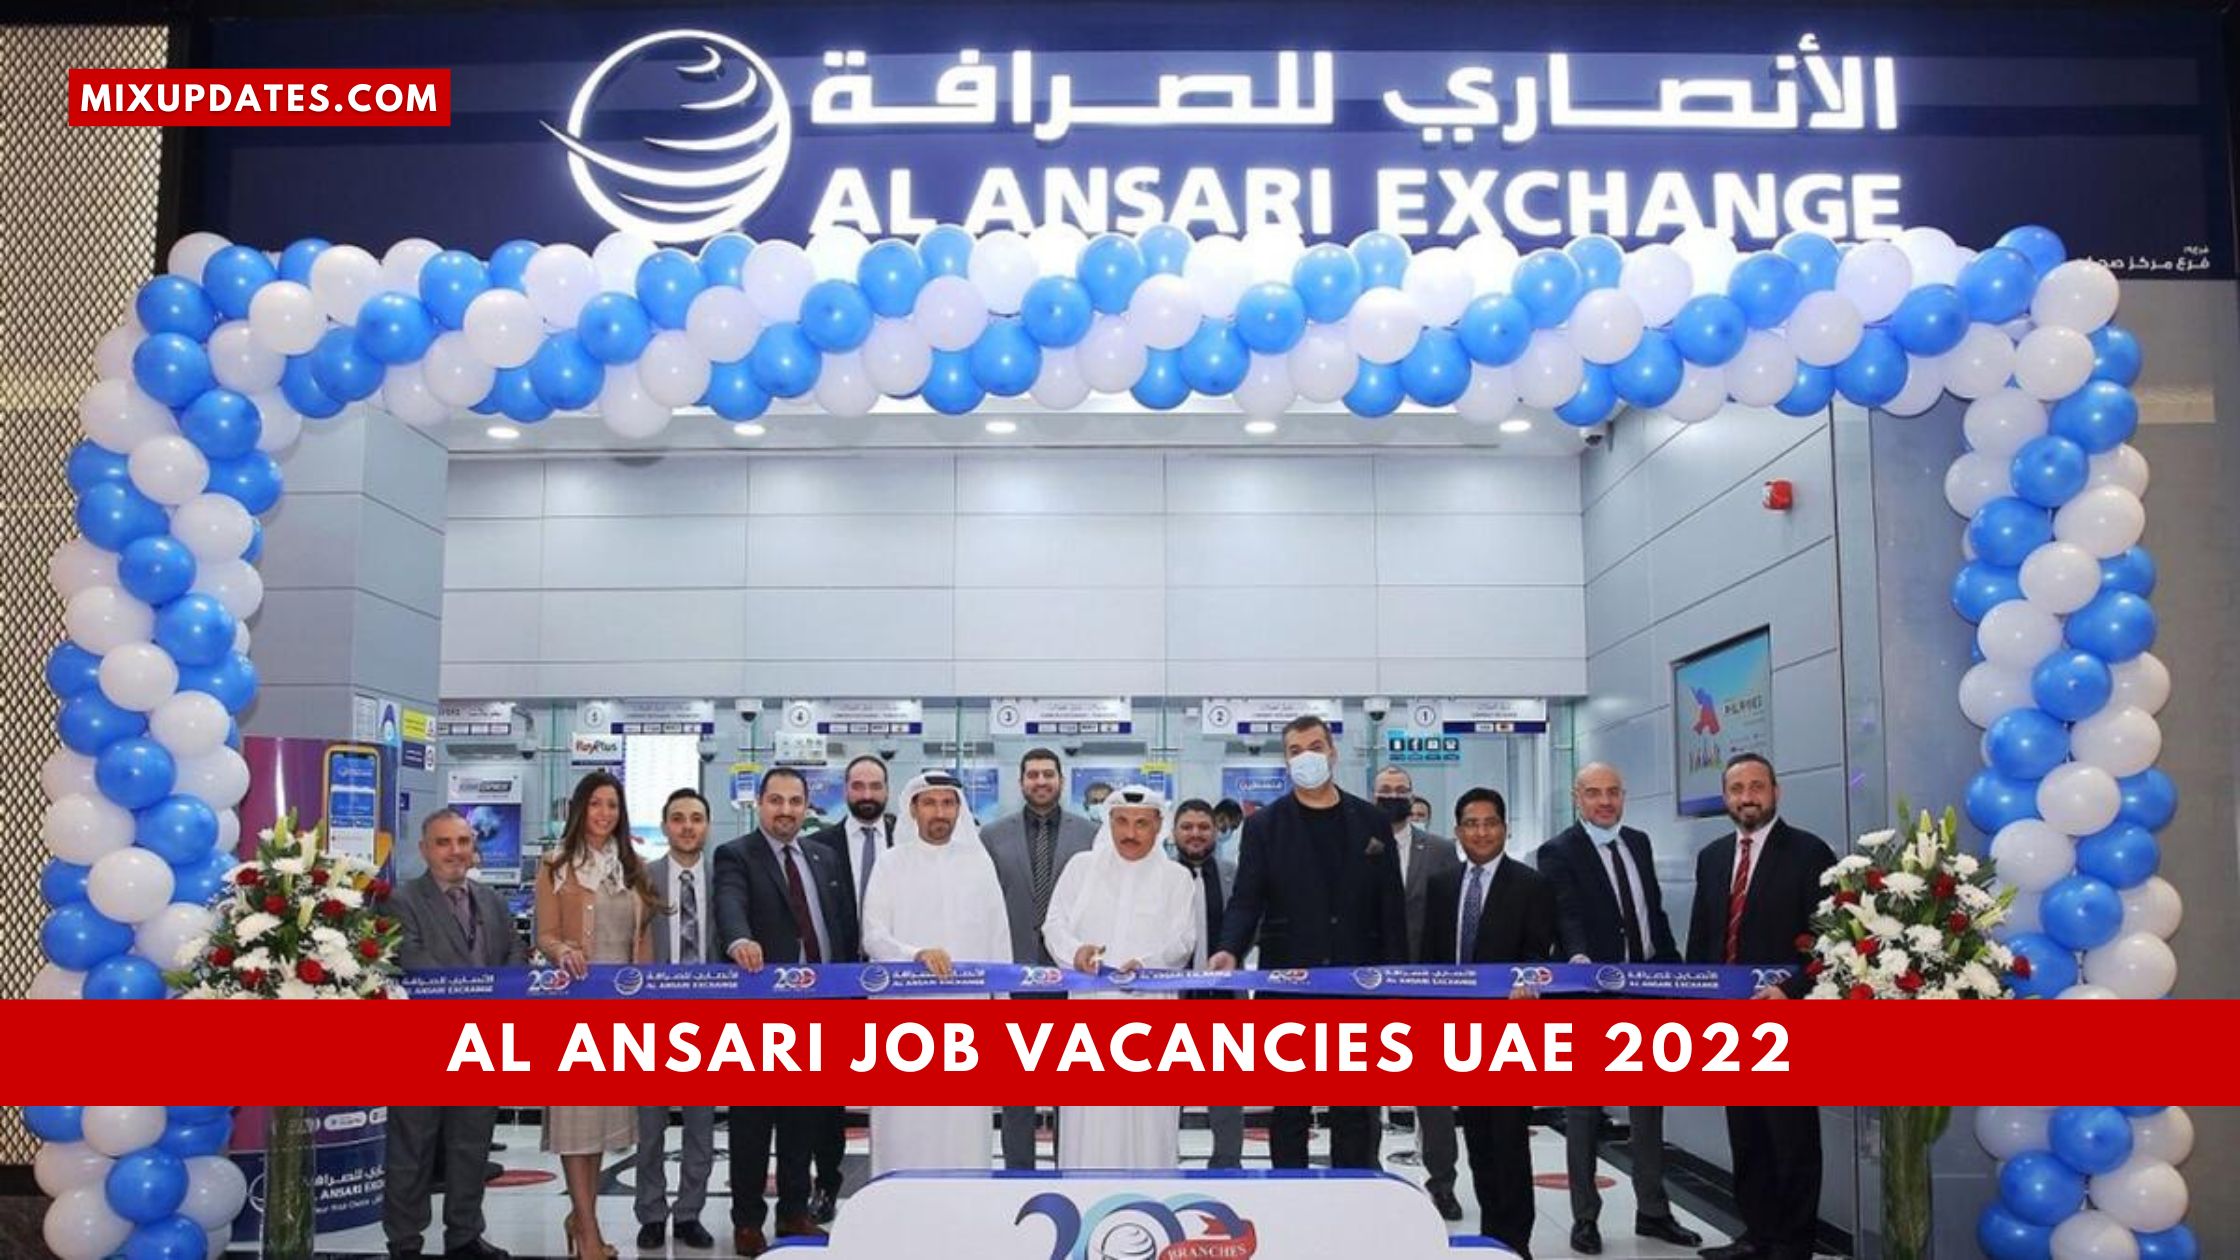 Al Ansari Job Vacancies UAE 2022